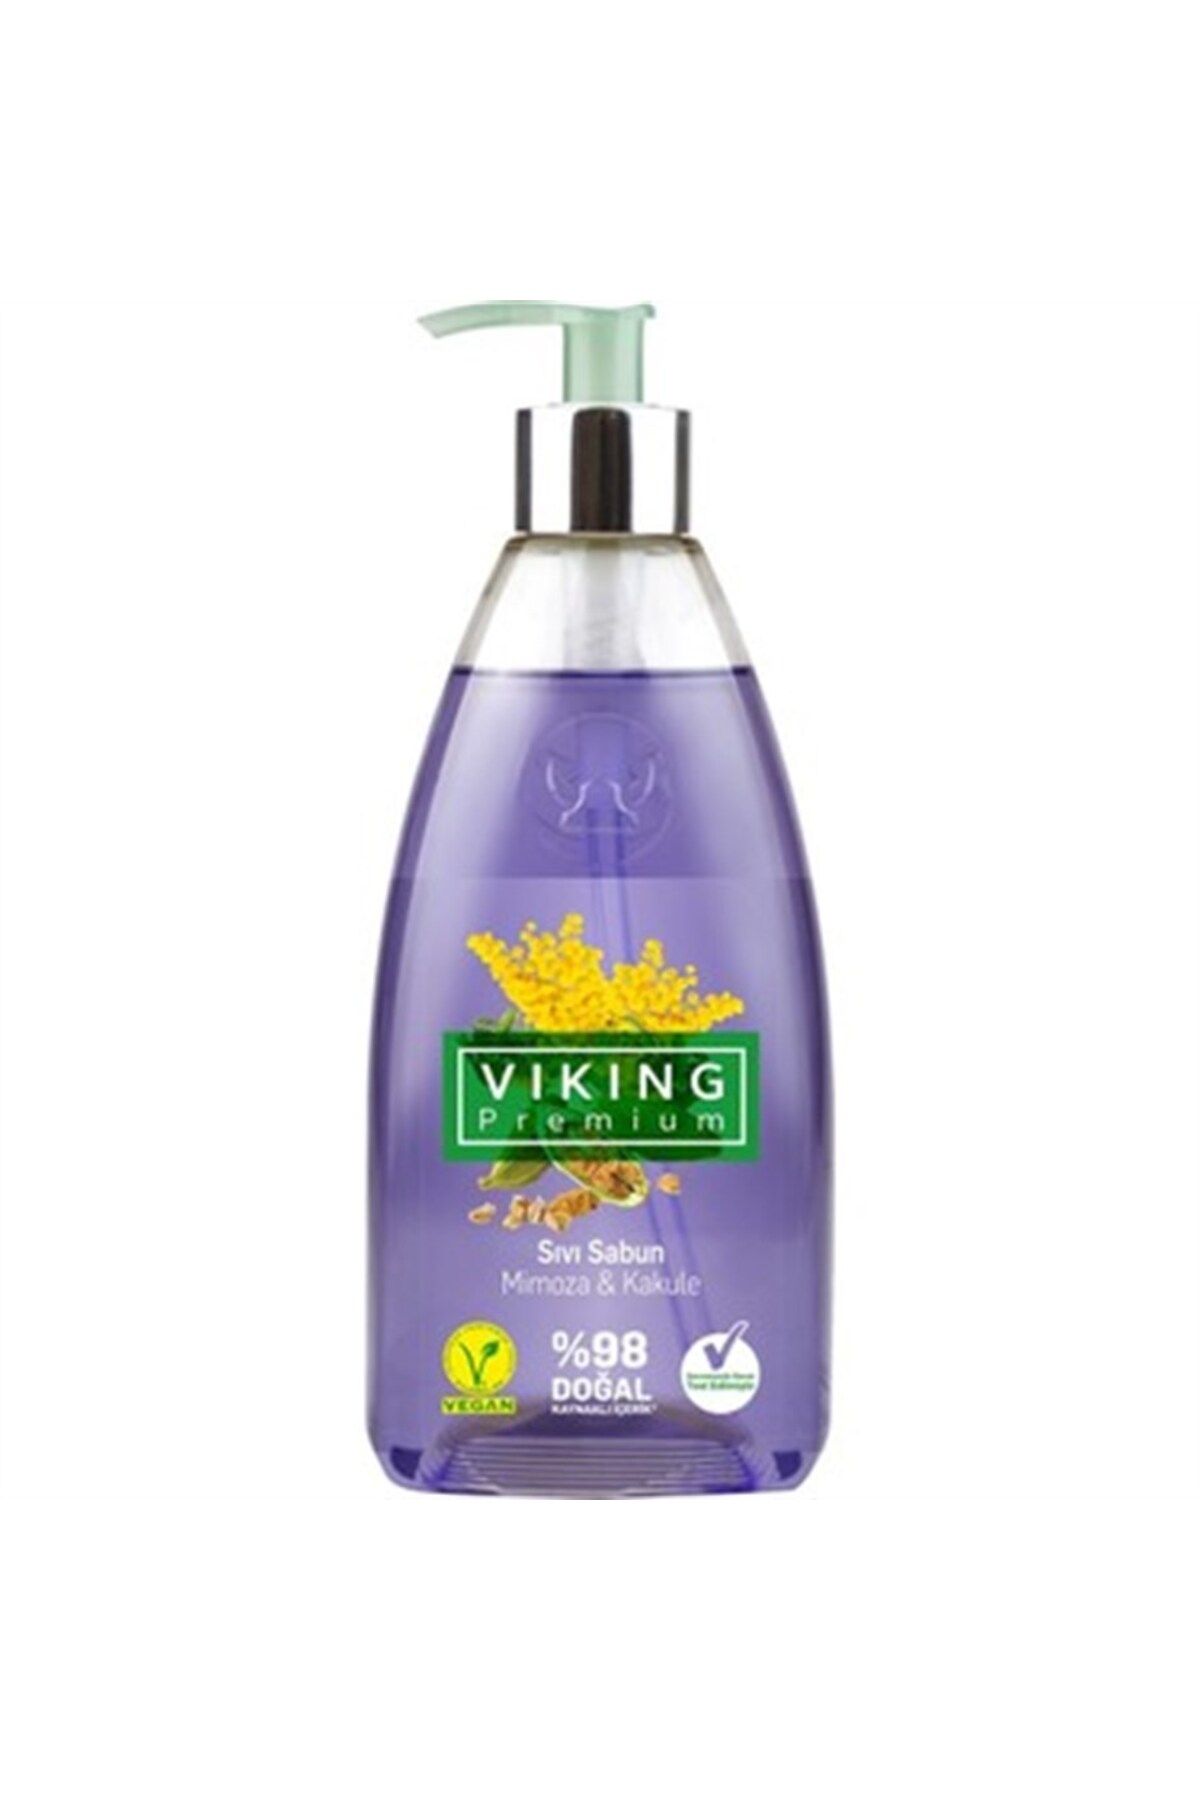 Viking Premium Sıvı El Sabunu Mimoza 500 ml